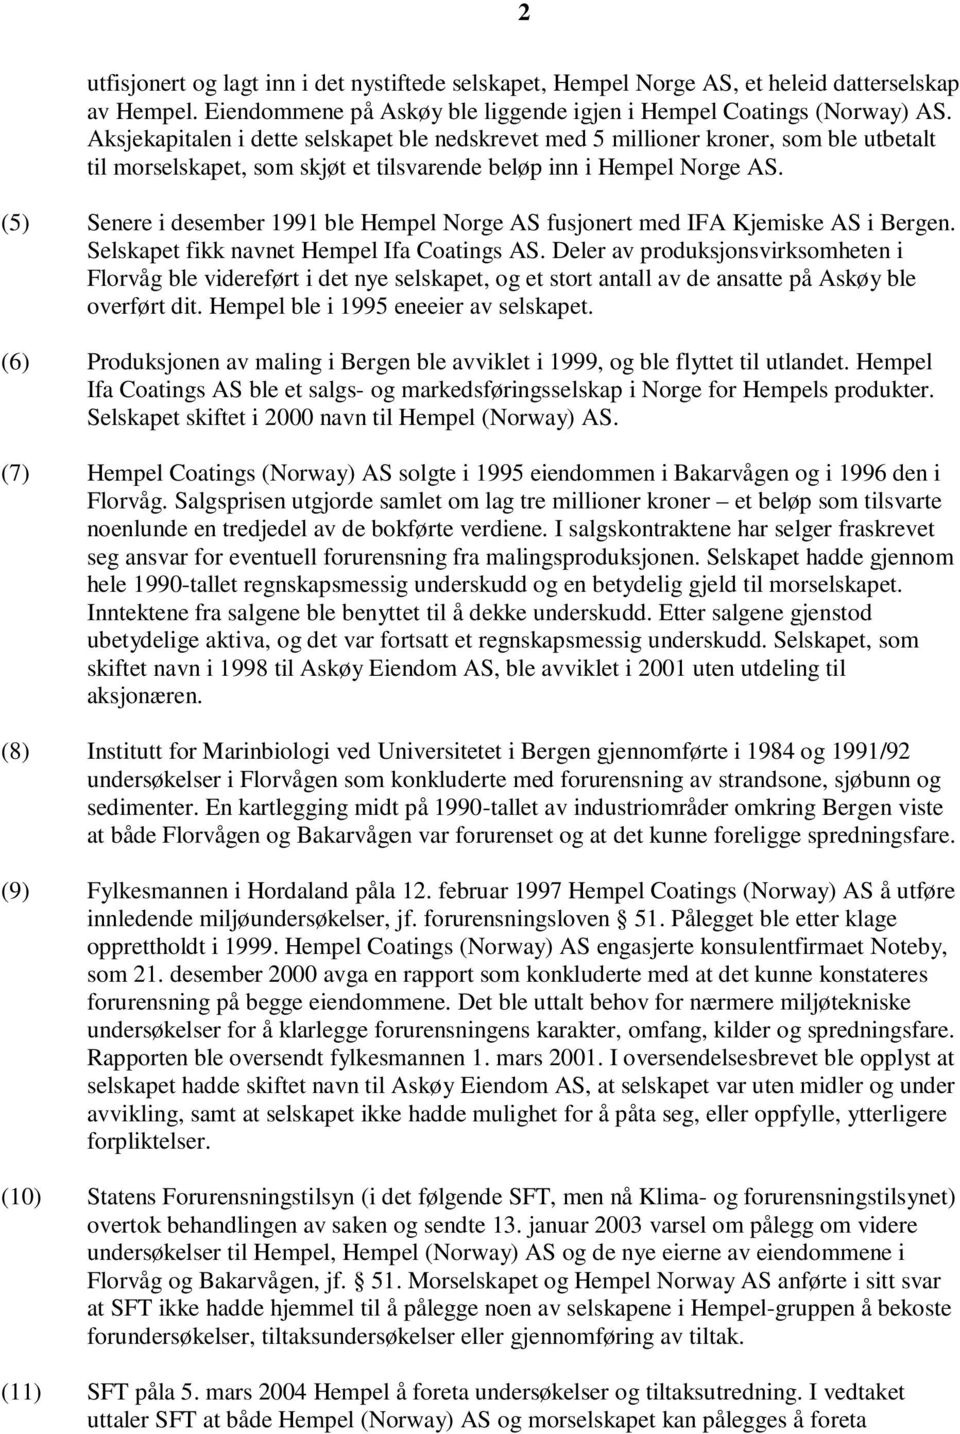 (5) Senere i desember 1991 ble Hempel Norge AS fusjonert med IFA Kjemiske AS i Bergen. Selskapet fikk navnet Hempel Ifa Coatings AS.